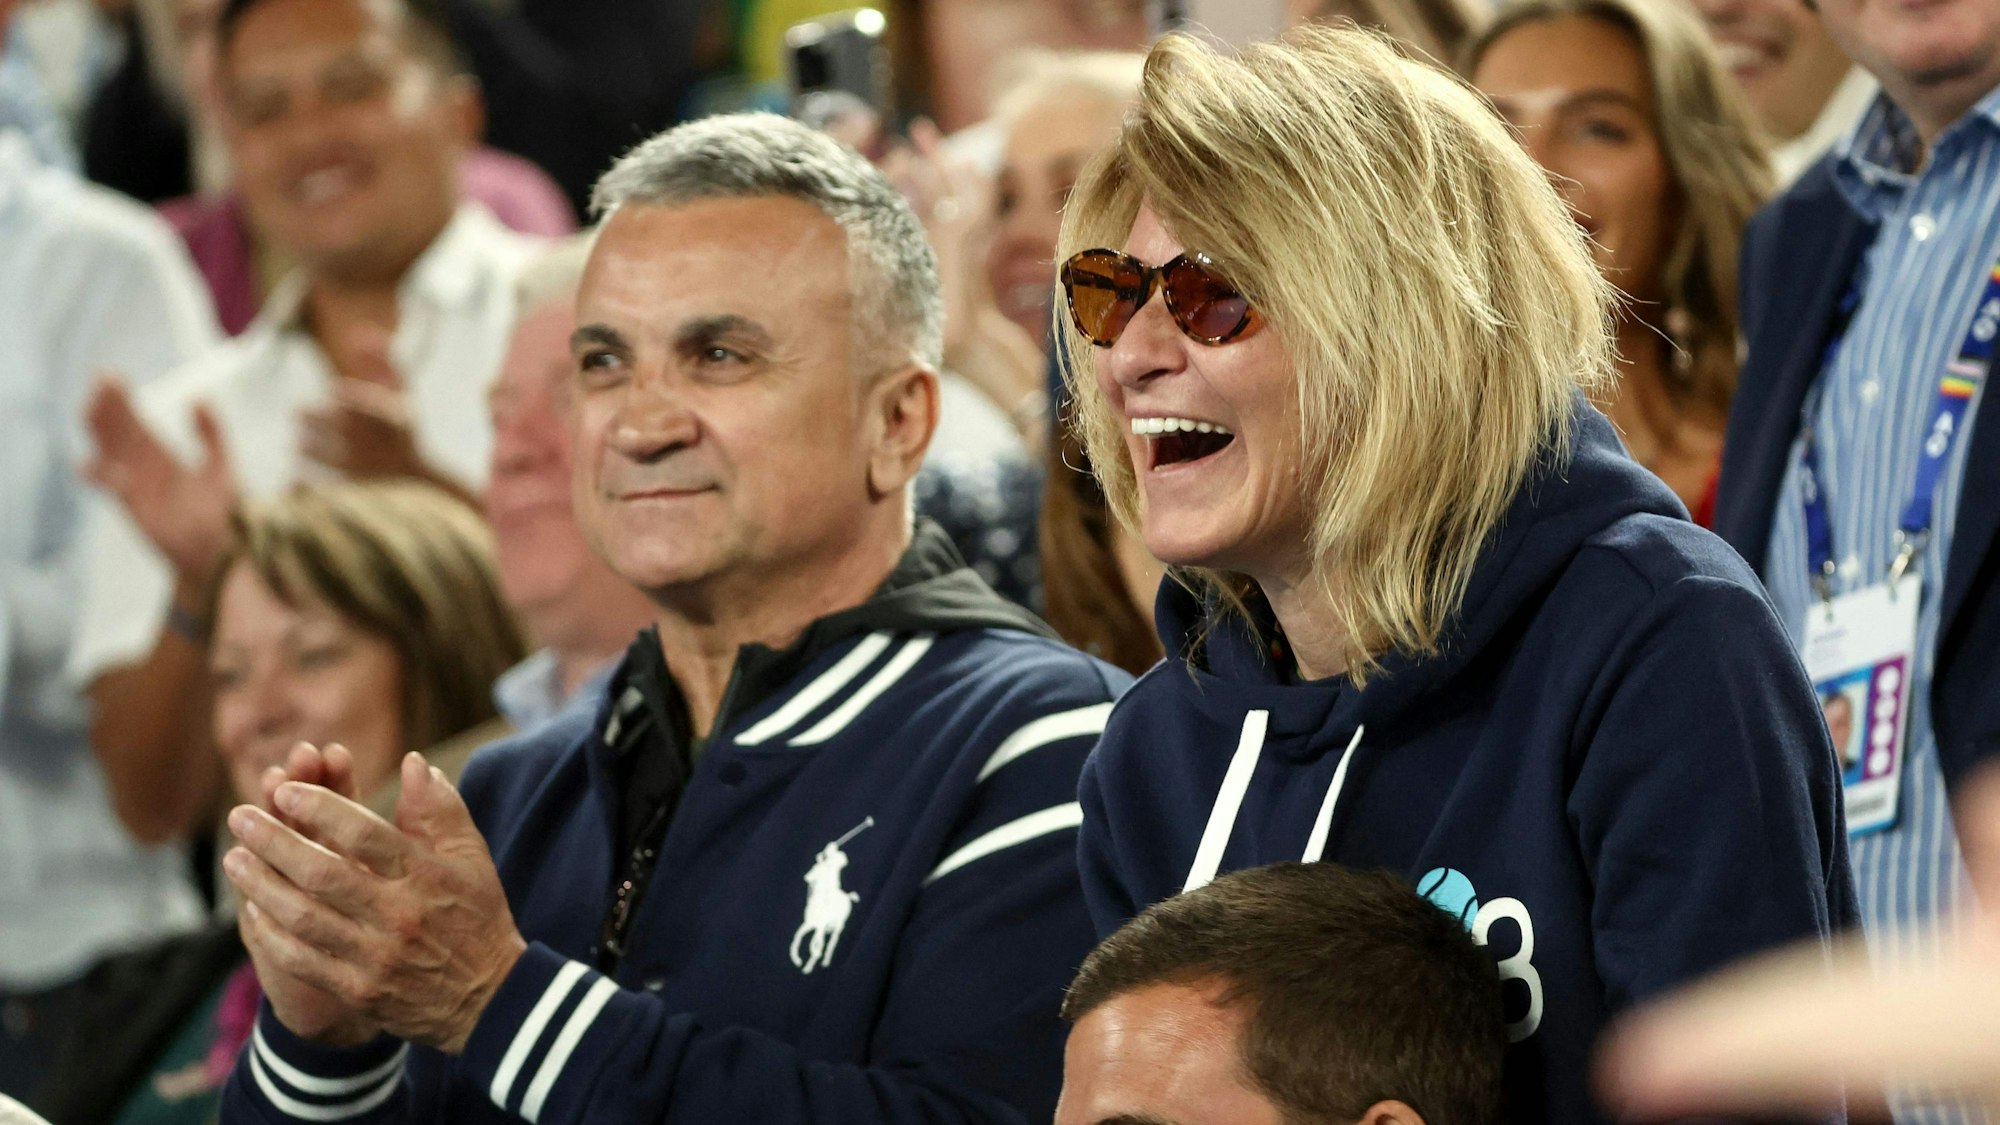 Srdjan Djokovic und Mutter Dijana Djokovic klatschen und lachen beim Spiel ihres Sohnes.